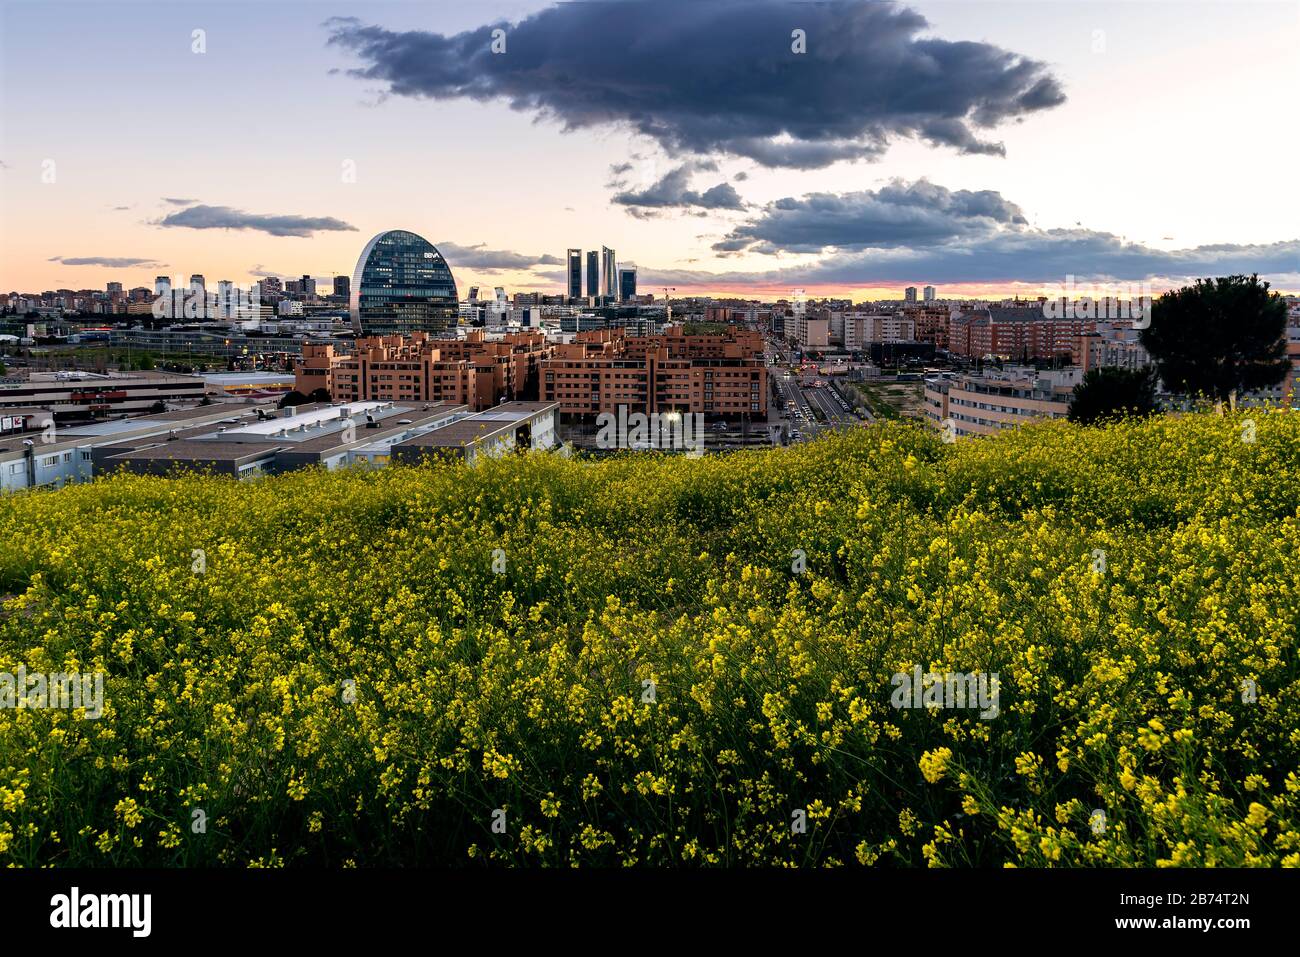 Madrid, Spagna - 7 marzo 2020: Vista panoramica dello skyline di Madrid dalla collina ricoperta di fiori gialli al tramonto in primavera, con i raggi o Foto Stock